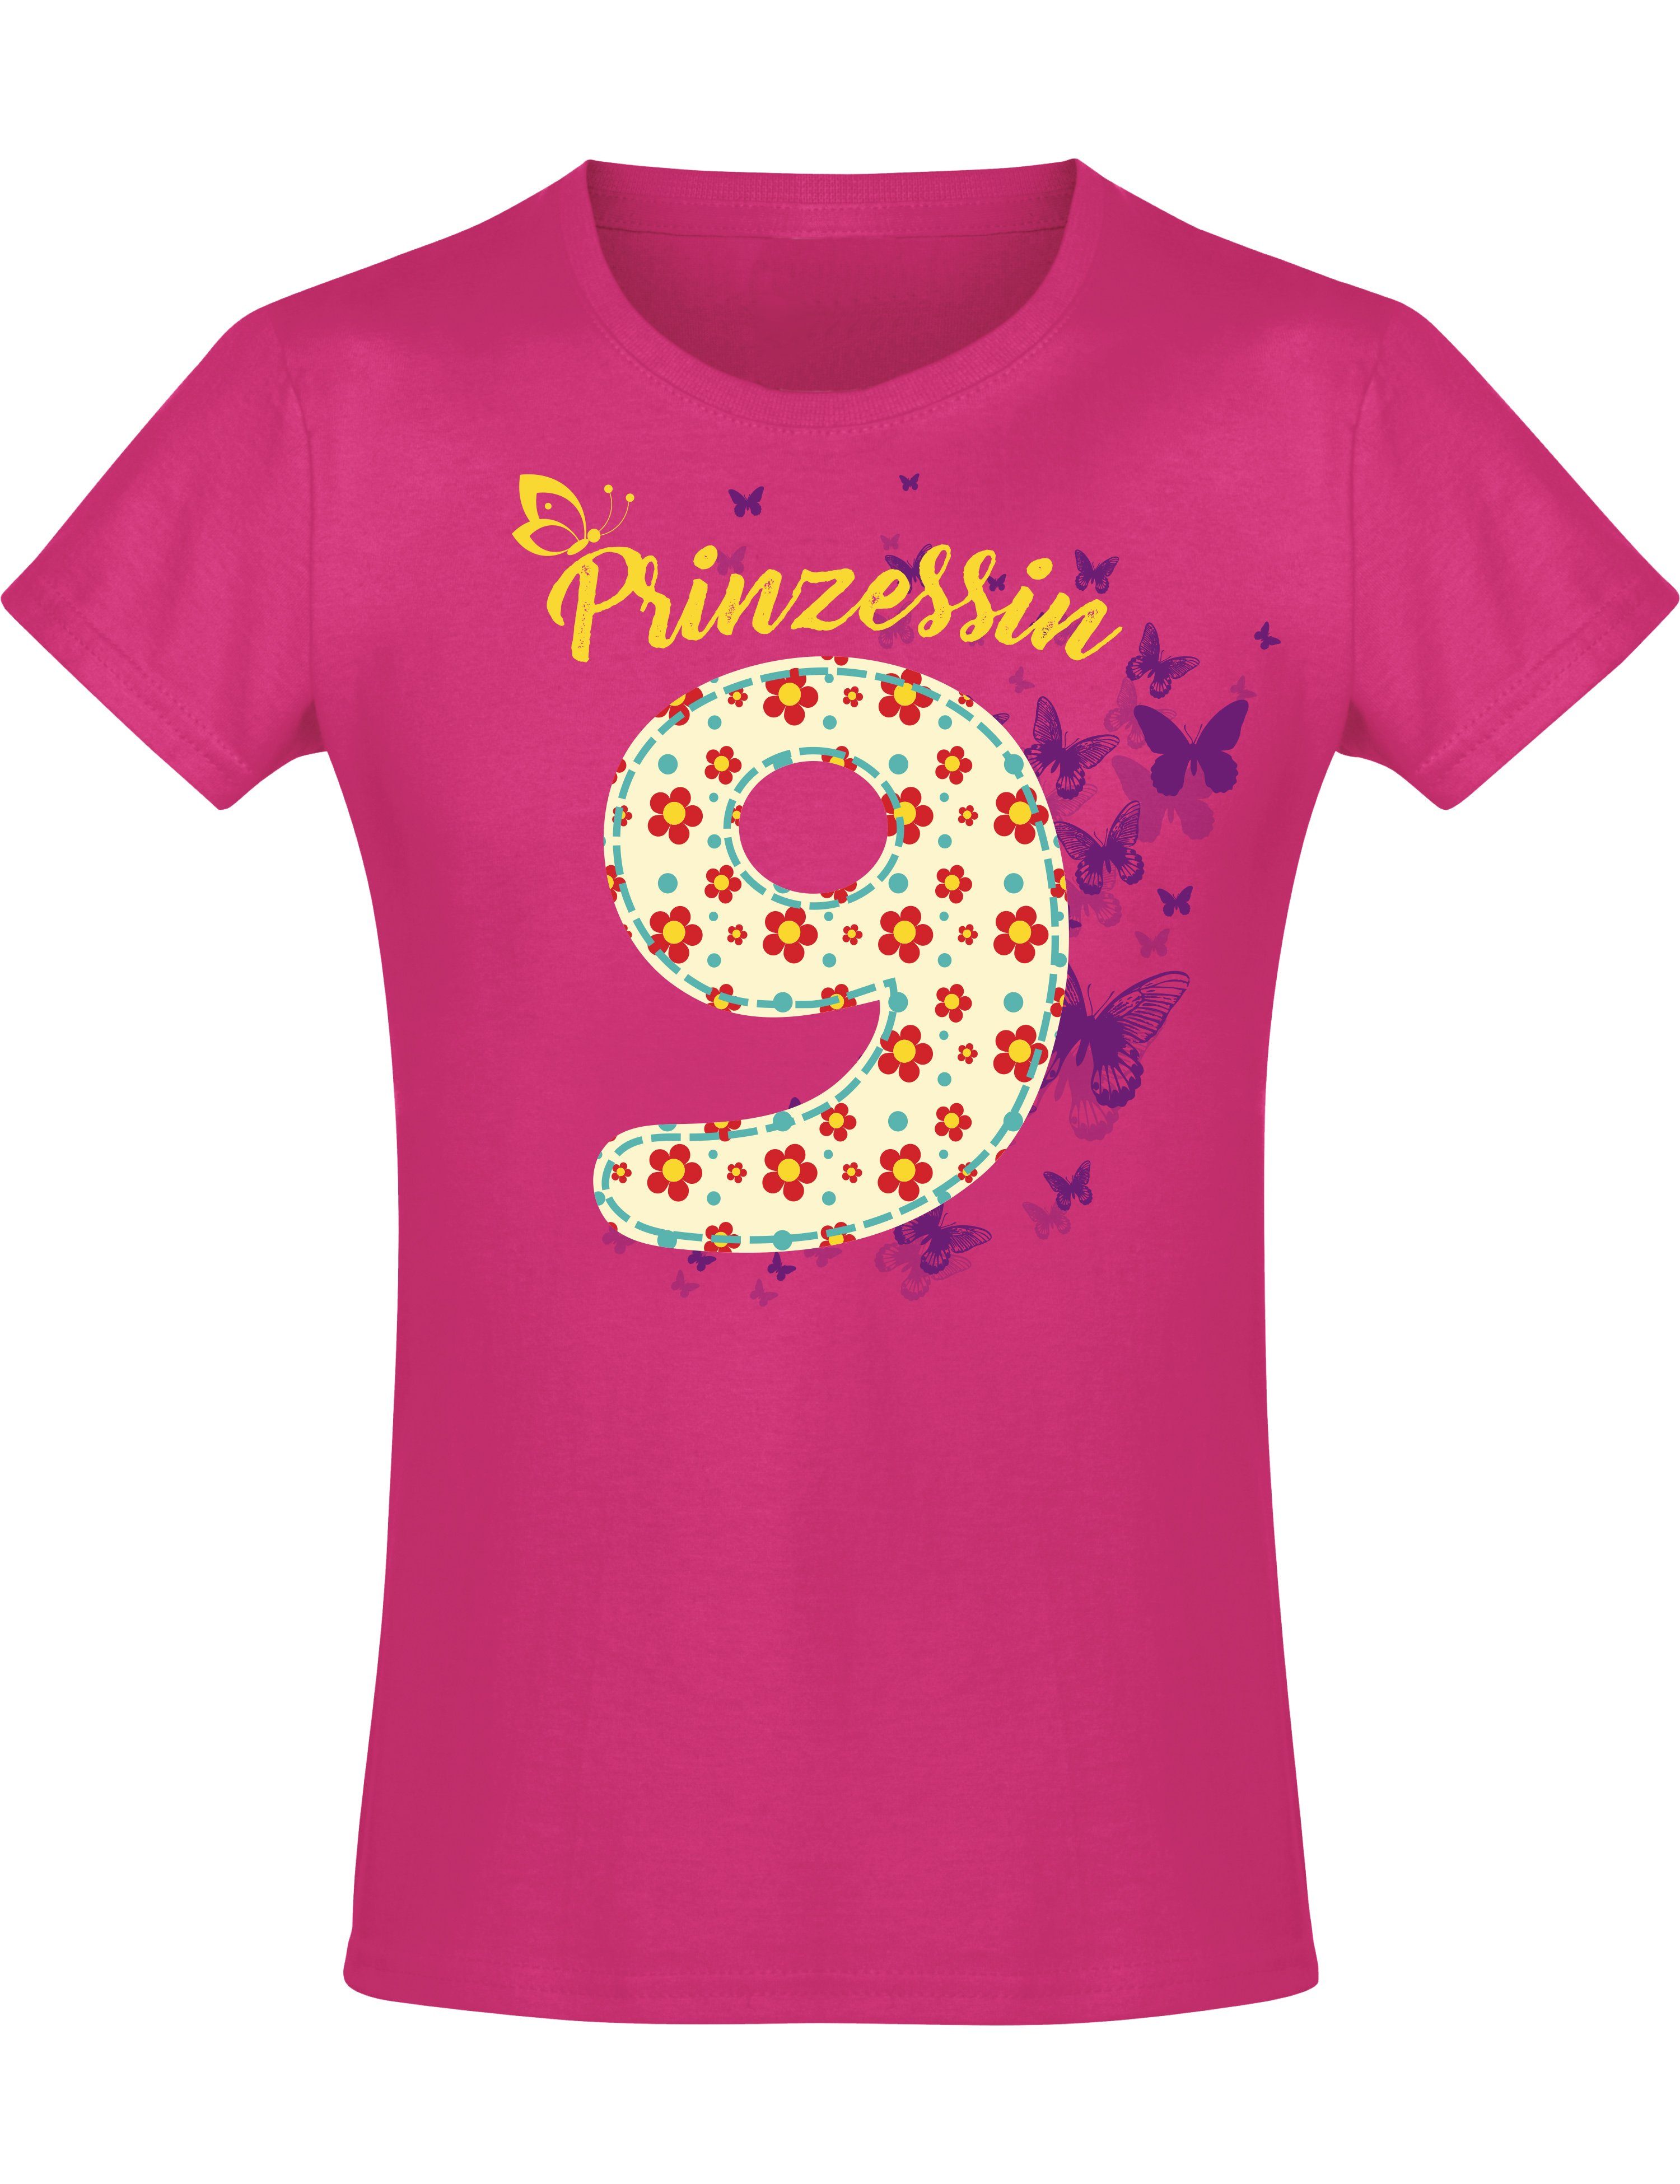 Baddery Print-Shirt Geburstagsgeschenk für Mädchen : 9 Jahre mit Blumen, hochwertiger Siebdruck, aus Baumwolle